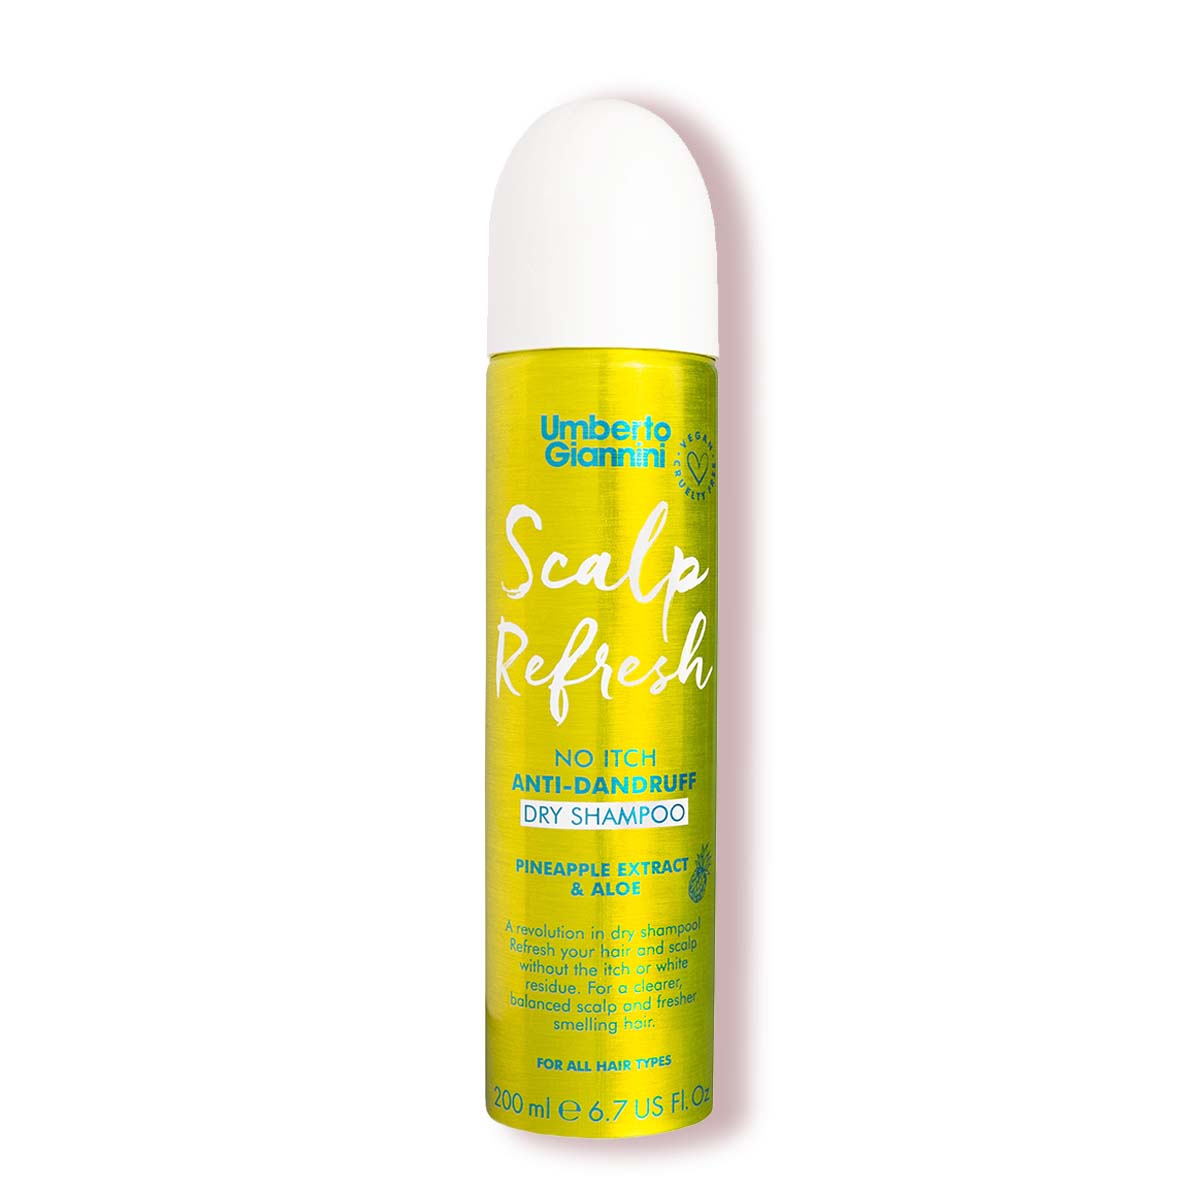 Scalp Refresh Anti-Dandruff Dry Shampoo